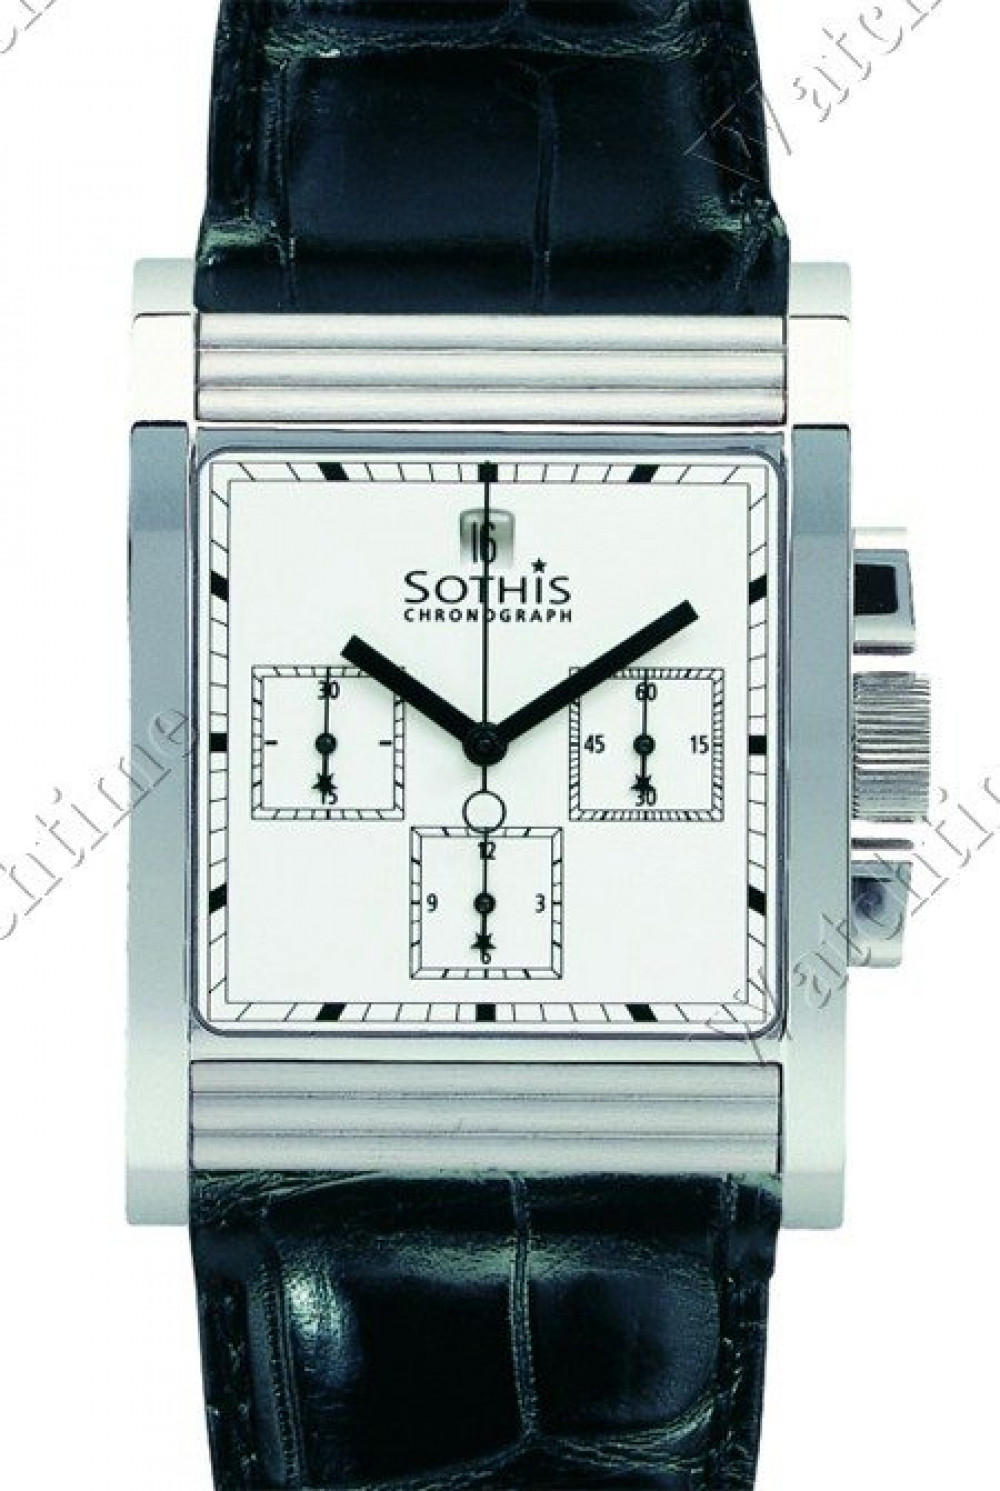 Zegarek firmy Sothis, model Big Bride II